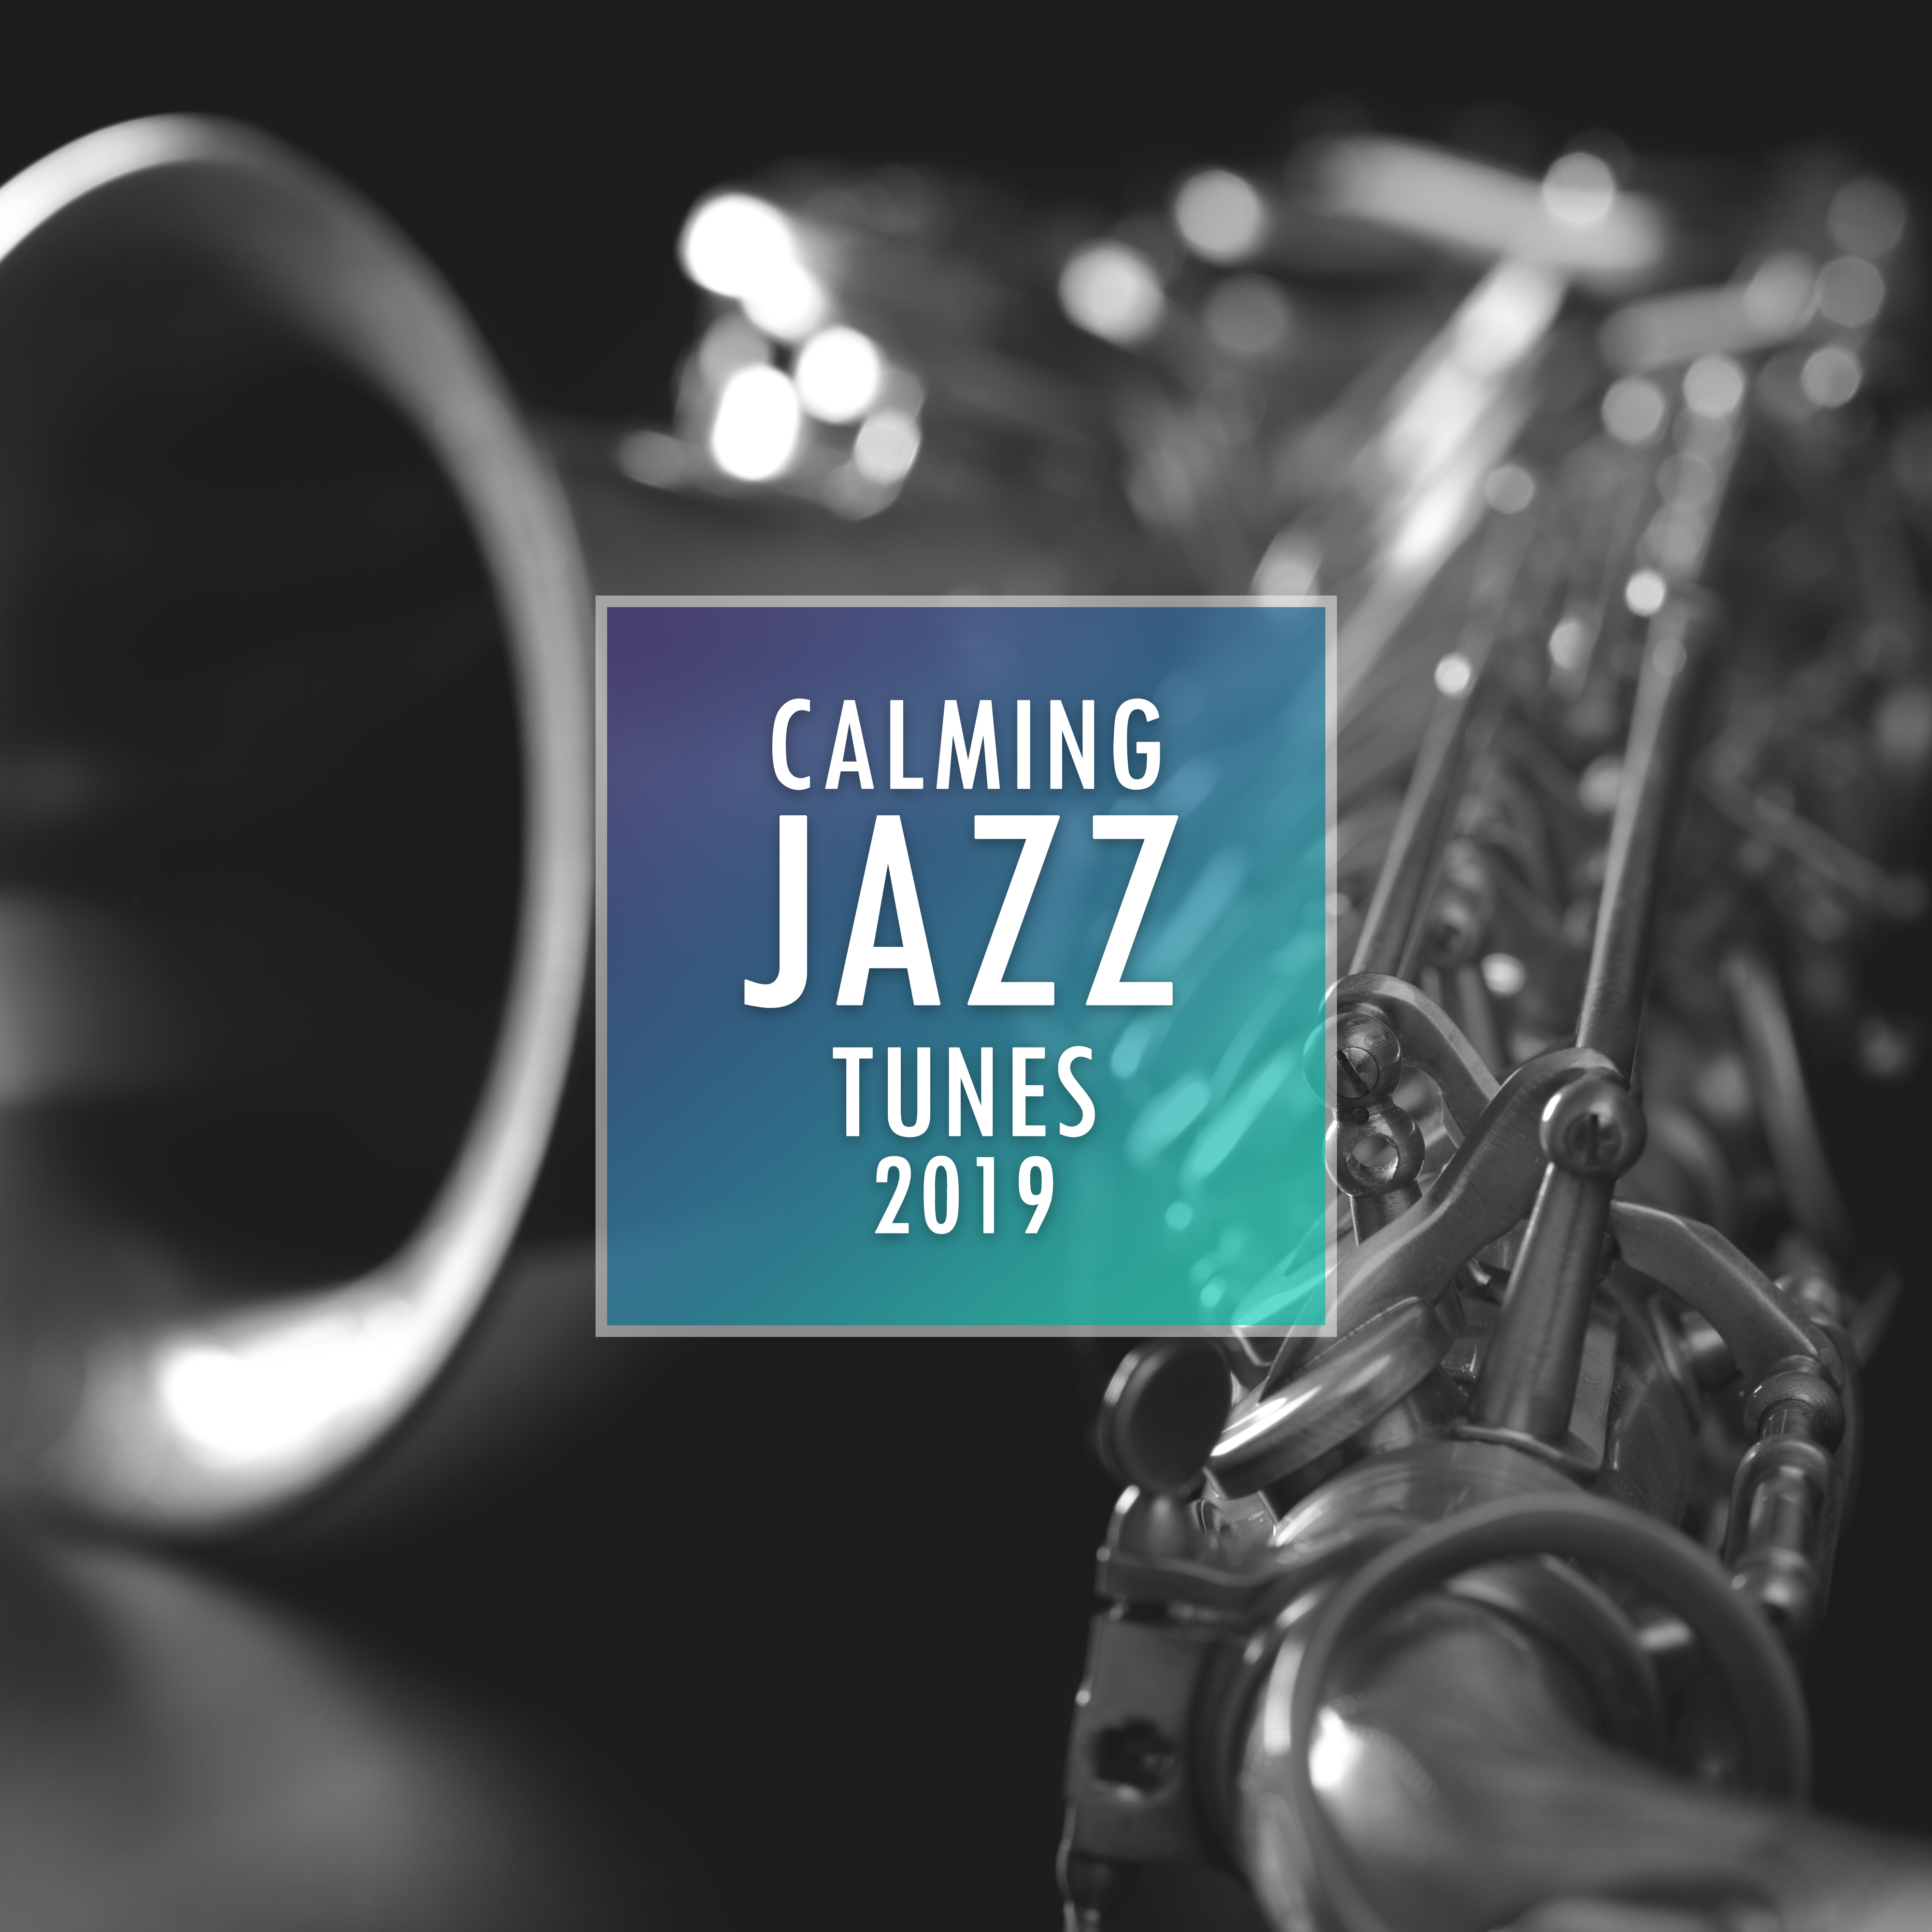 Calming Jazz Tunes 2019